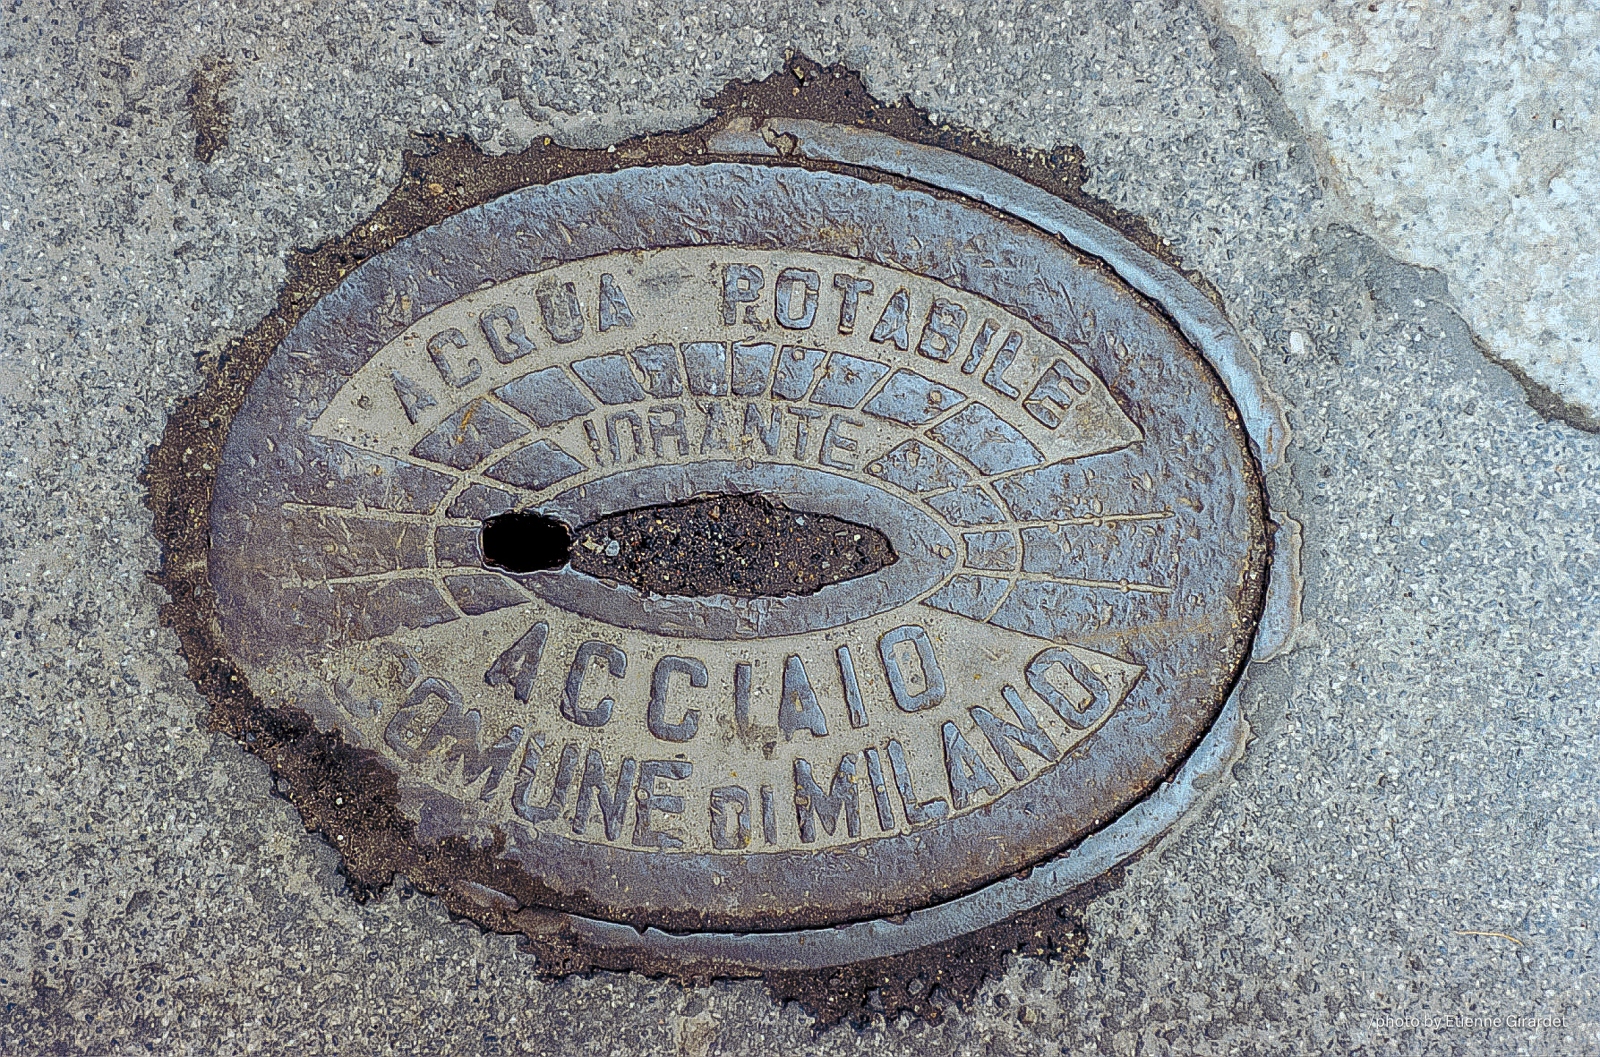 200105e_milano_01_GTM-manhole-cover-acqua-milano-by-E-Girardet.jpg